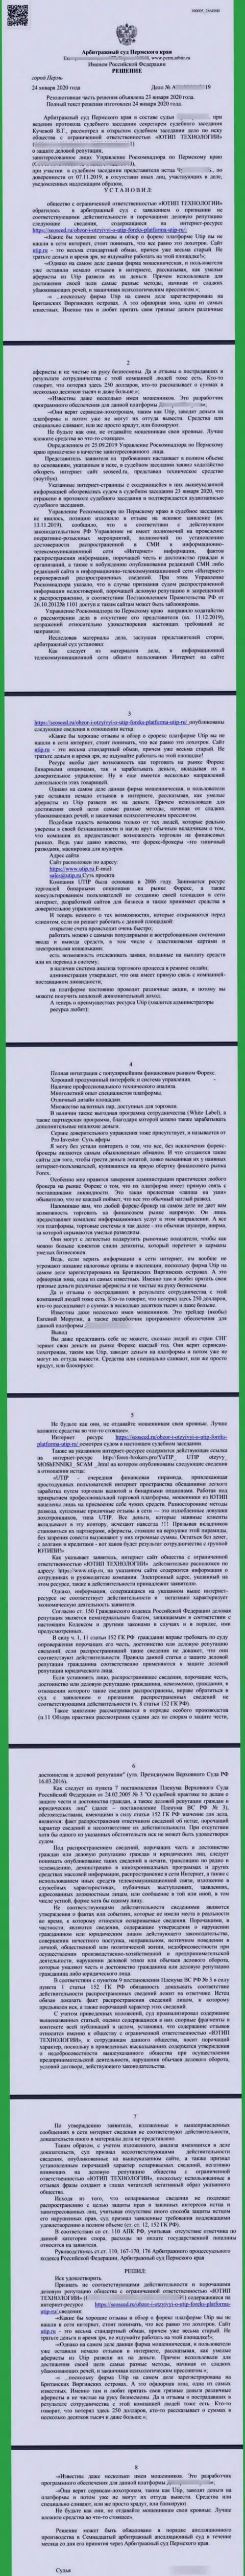 Судебный иск мошенников UTIP Ru, который оказался удовлетворенным самым гуманным судом в мире